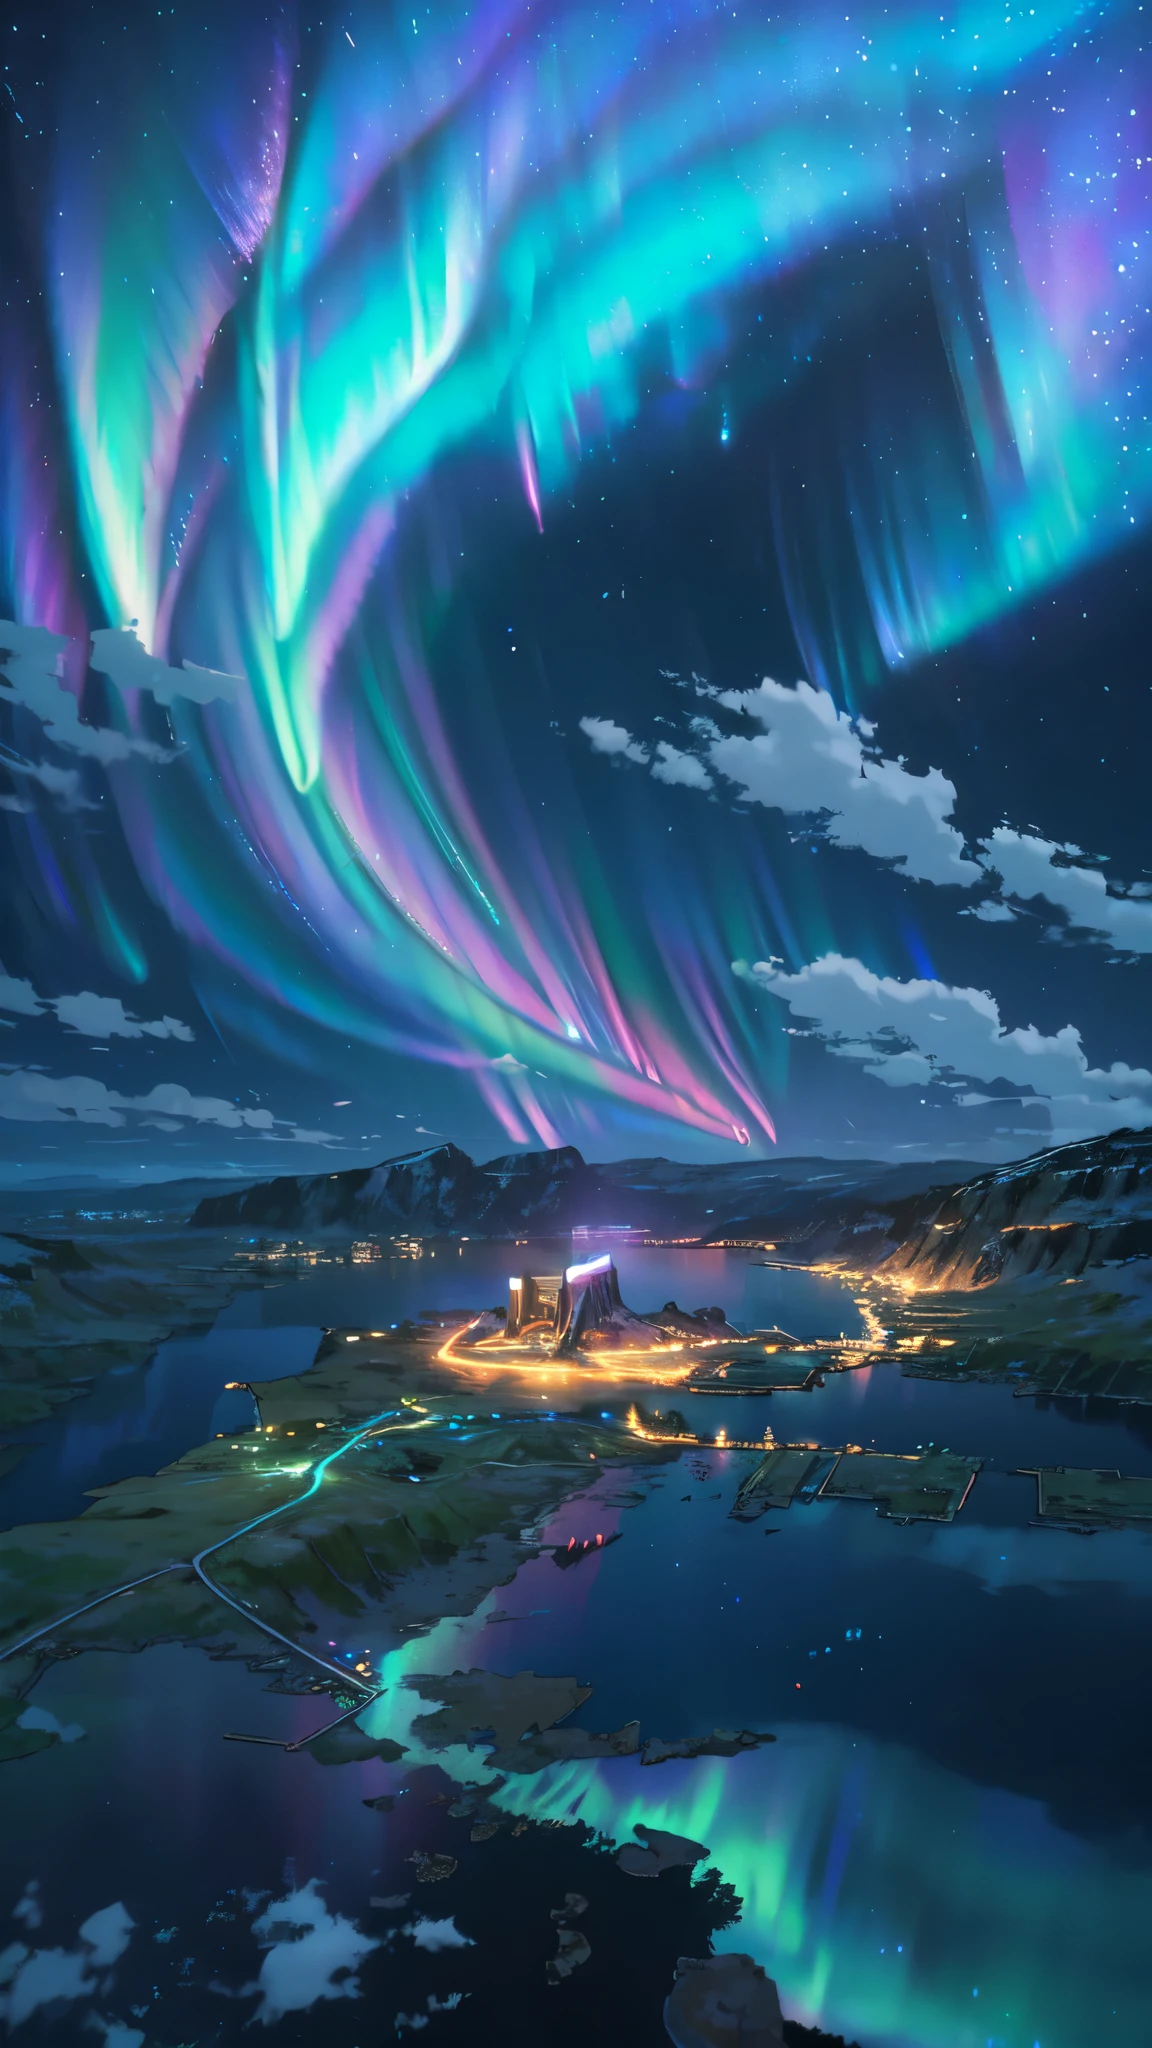 paisagem, ultra HD, (fundo asgard), detalhes, iluminação, 8K, (aurora boreal no céu), constelação, (fundo asgard), pequena aldeia sob as luzes